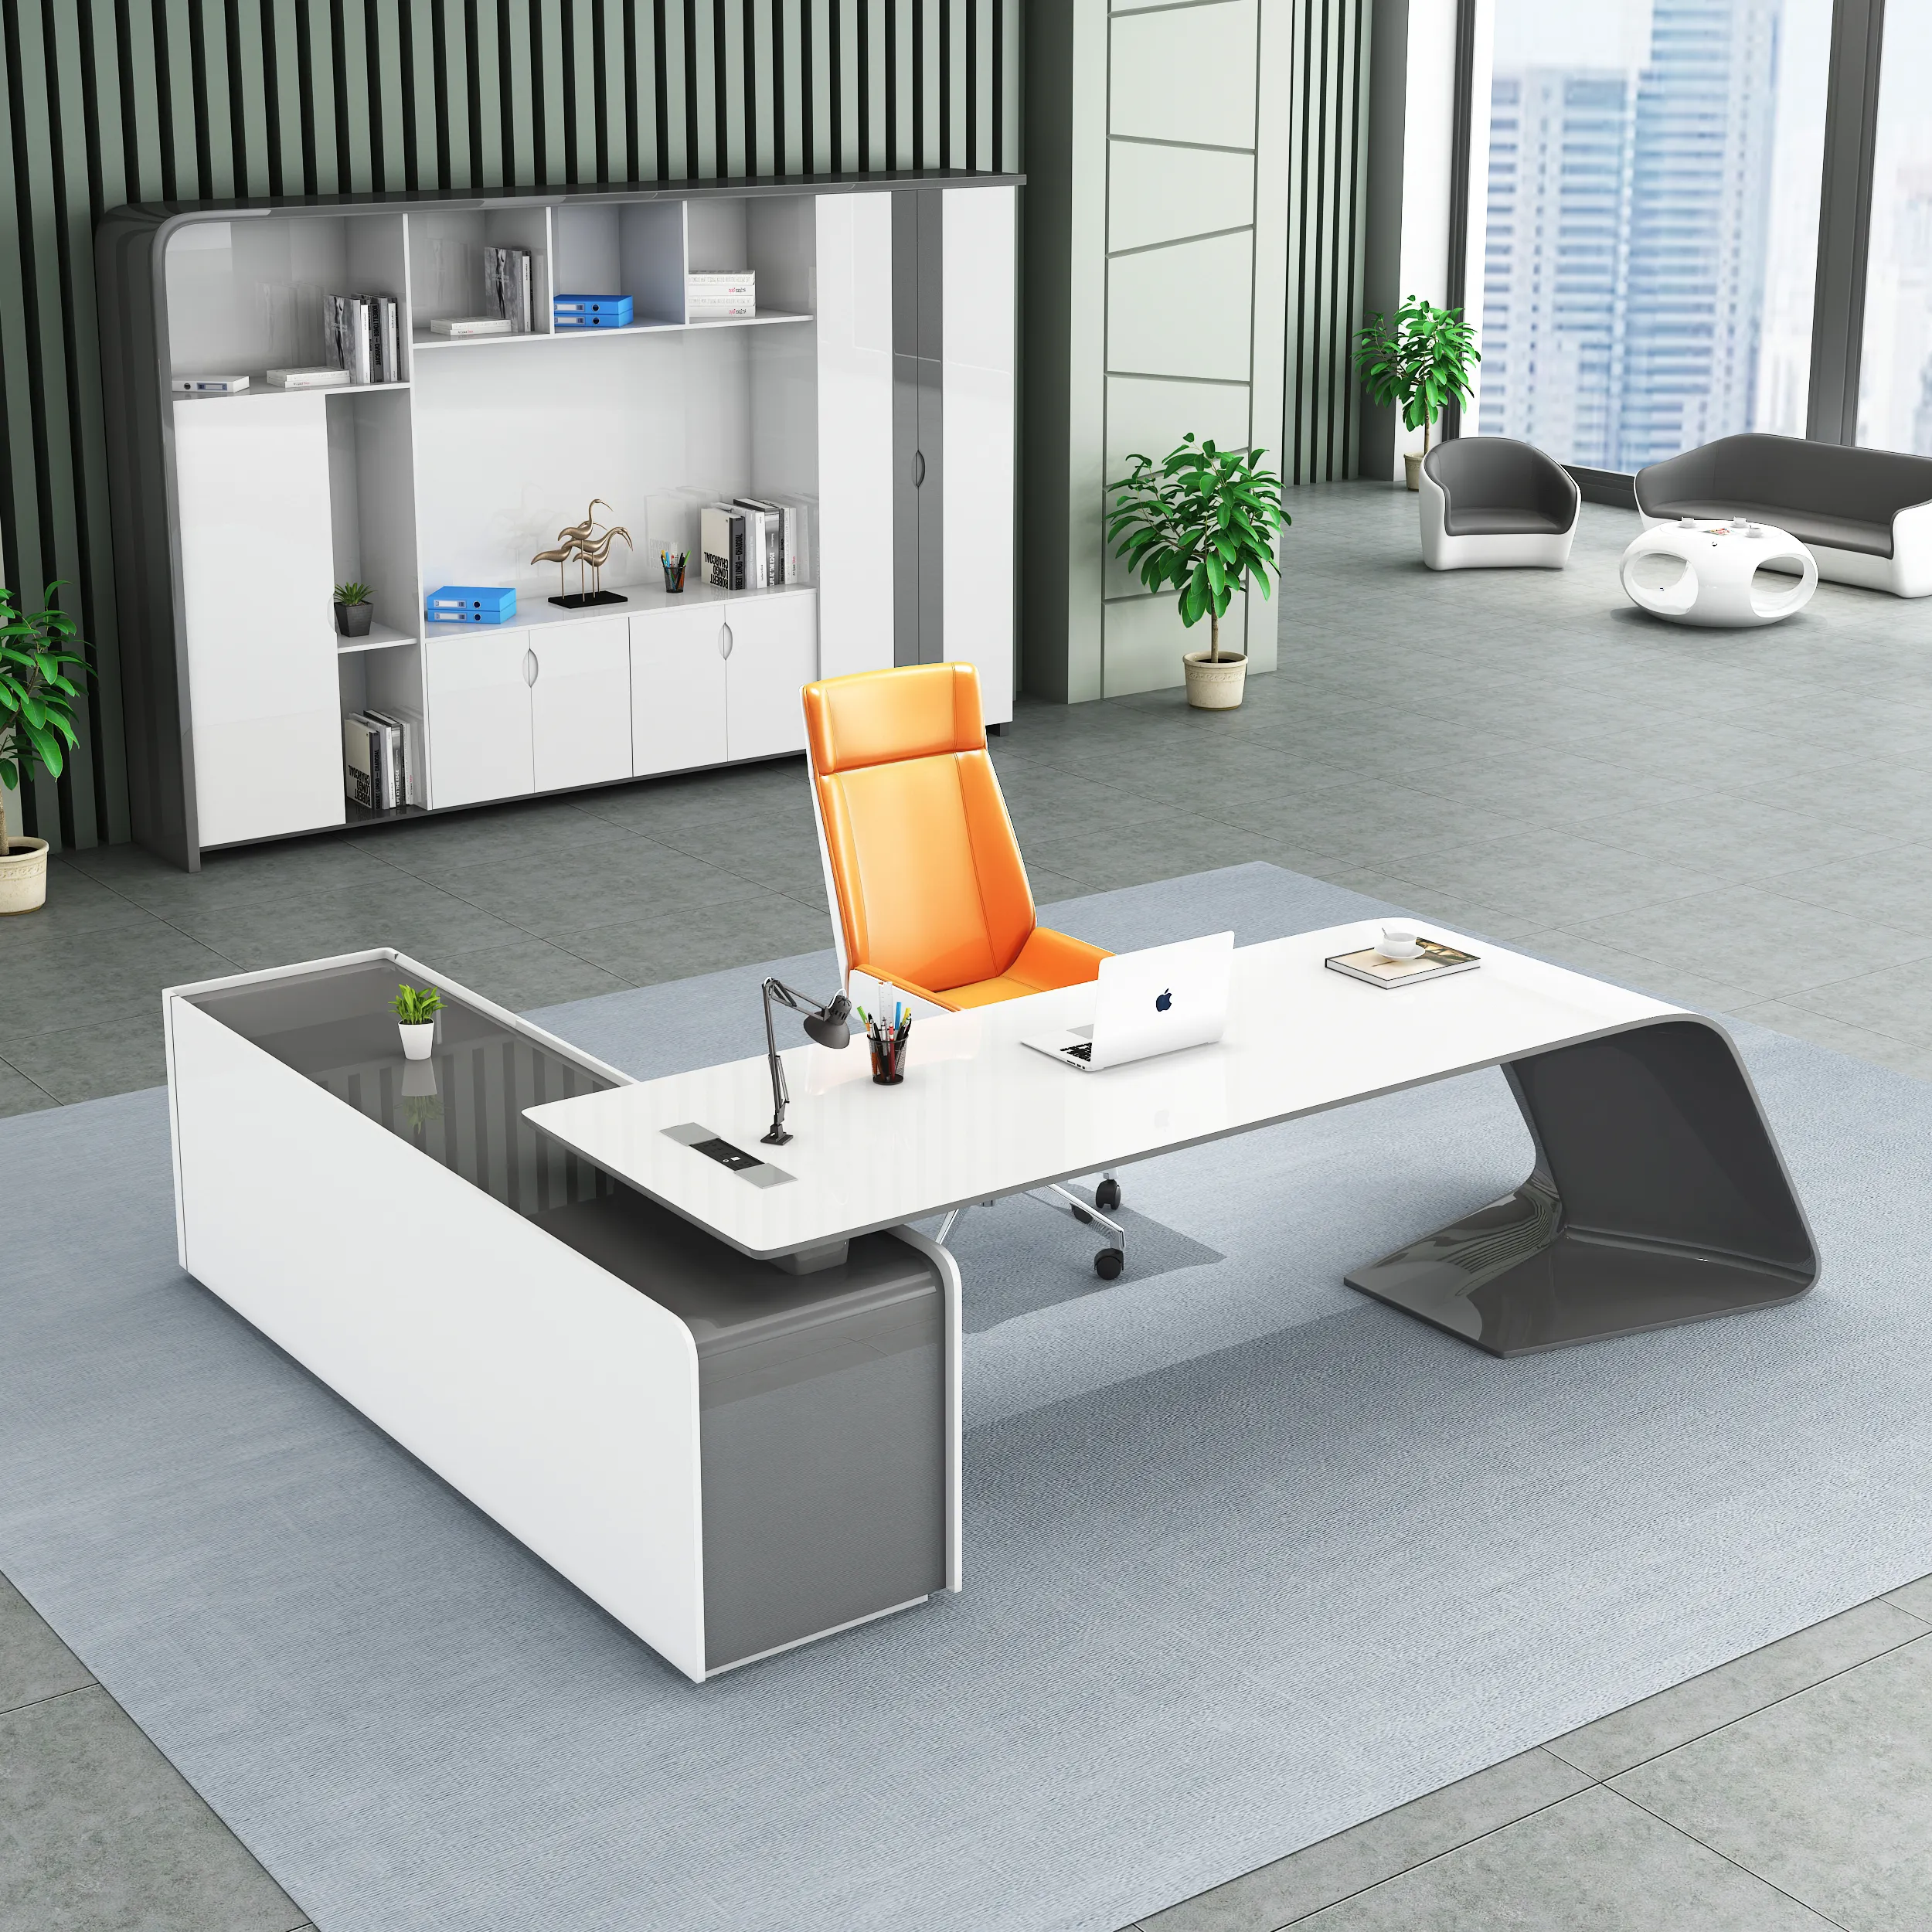 Офисная мебель LBZ08Luxury, рабочая станция L-образной формы, стол директора, современный дизайн руководителя, офисный стол руководителя